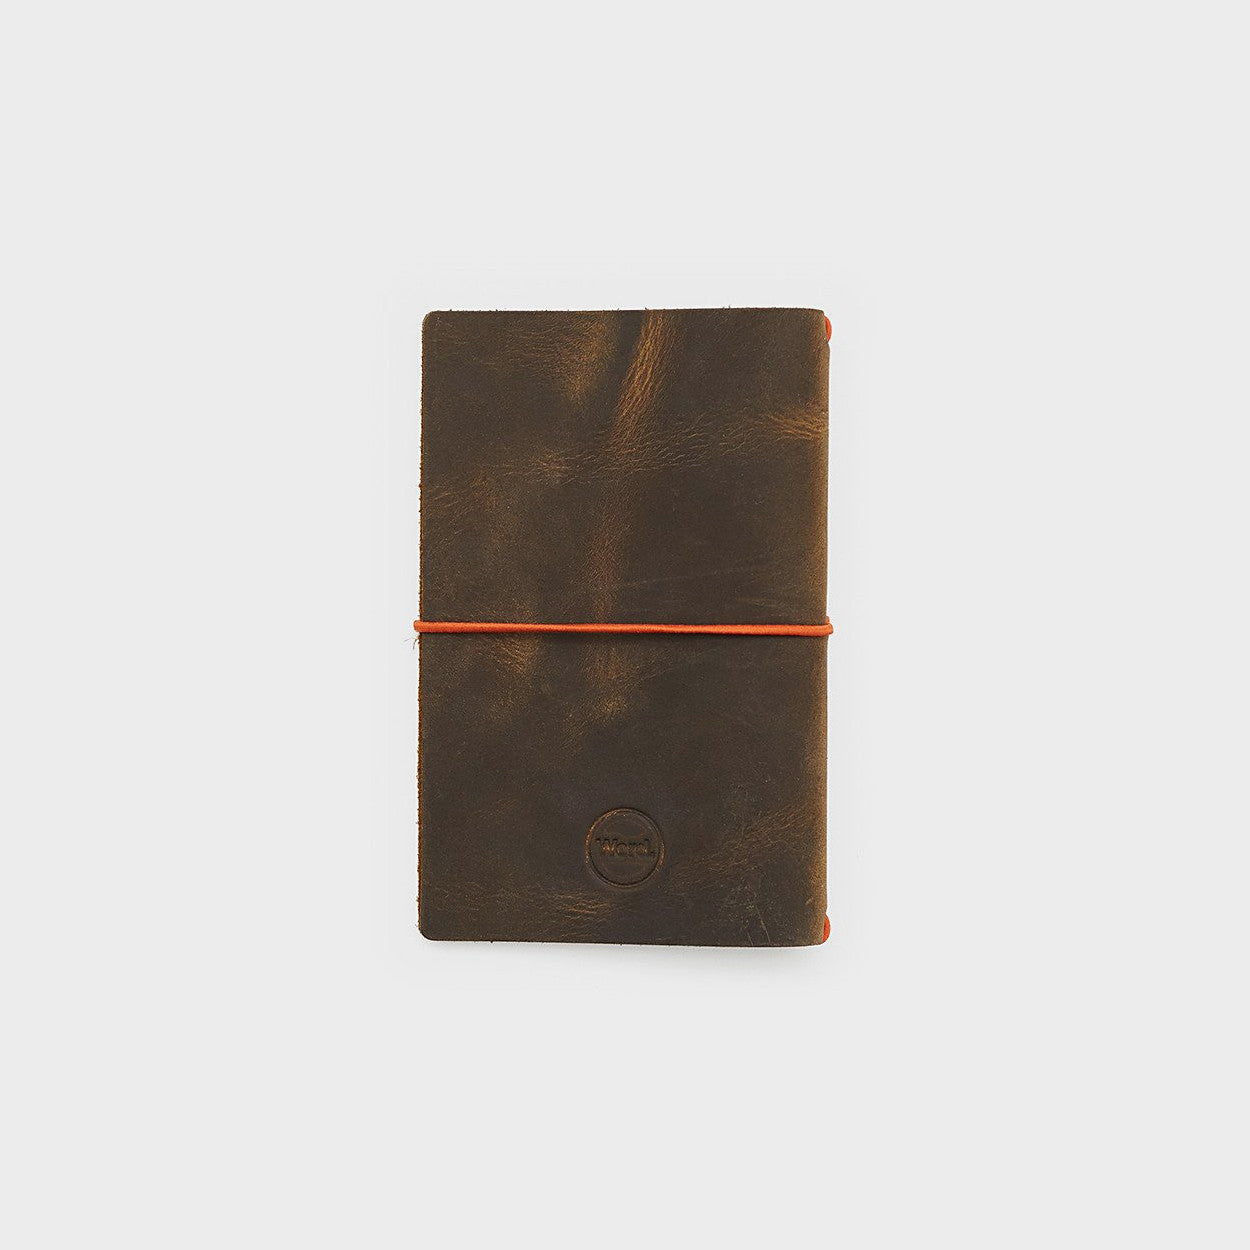 Leather Jacket - Olive/Orange